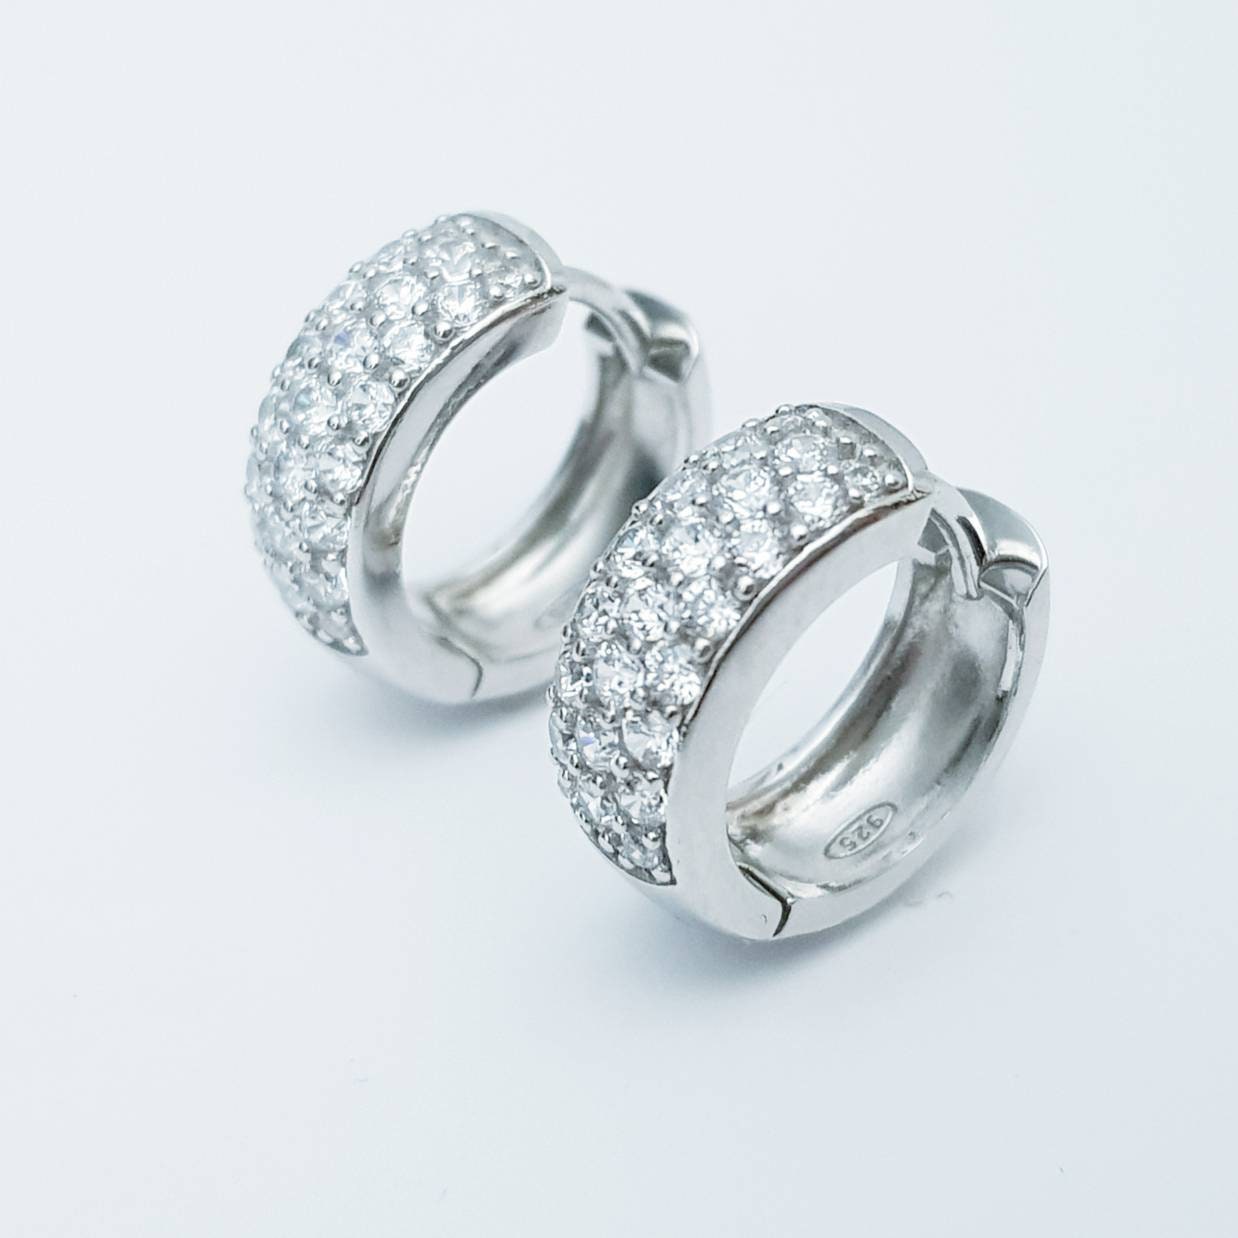 Sterling silver hoop earrings, chunky diamond hoop earrings, silver huggie earrings